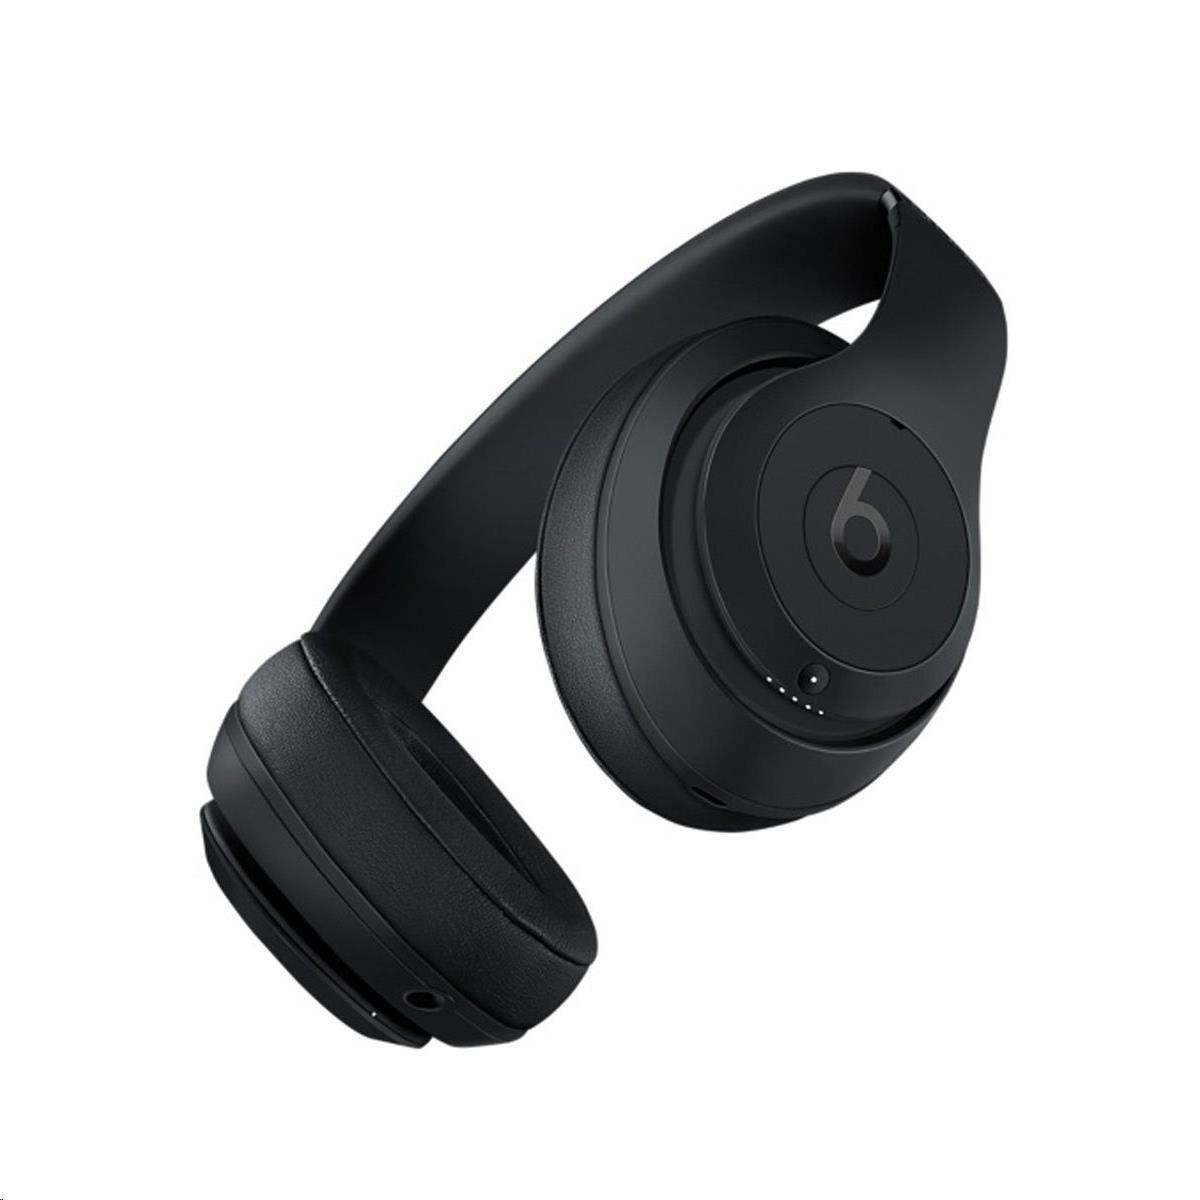 Beats Studio3 Wireless Over-Ear Headphones - Matte Black4 